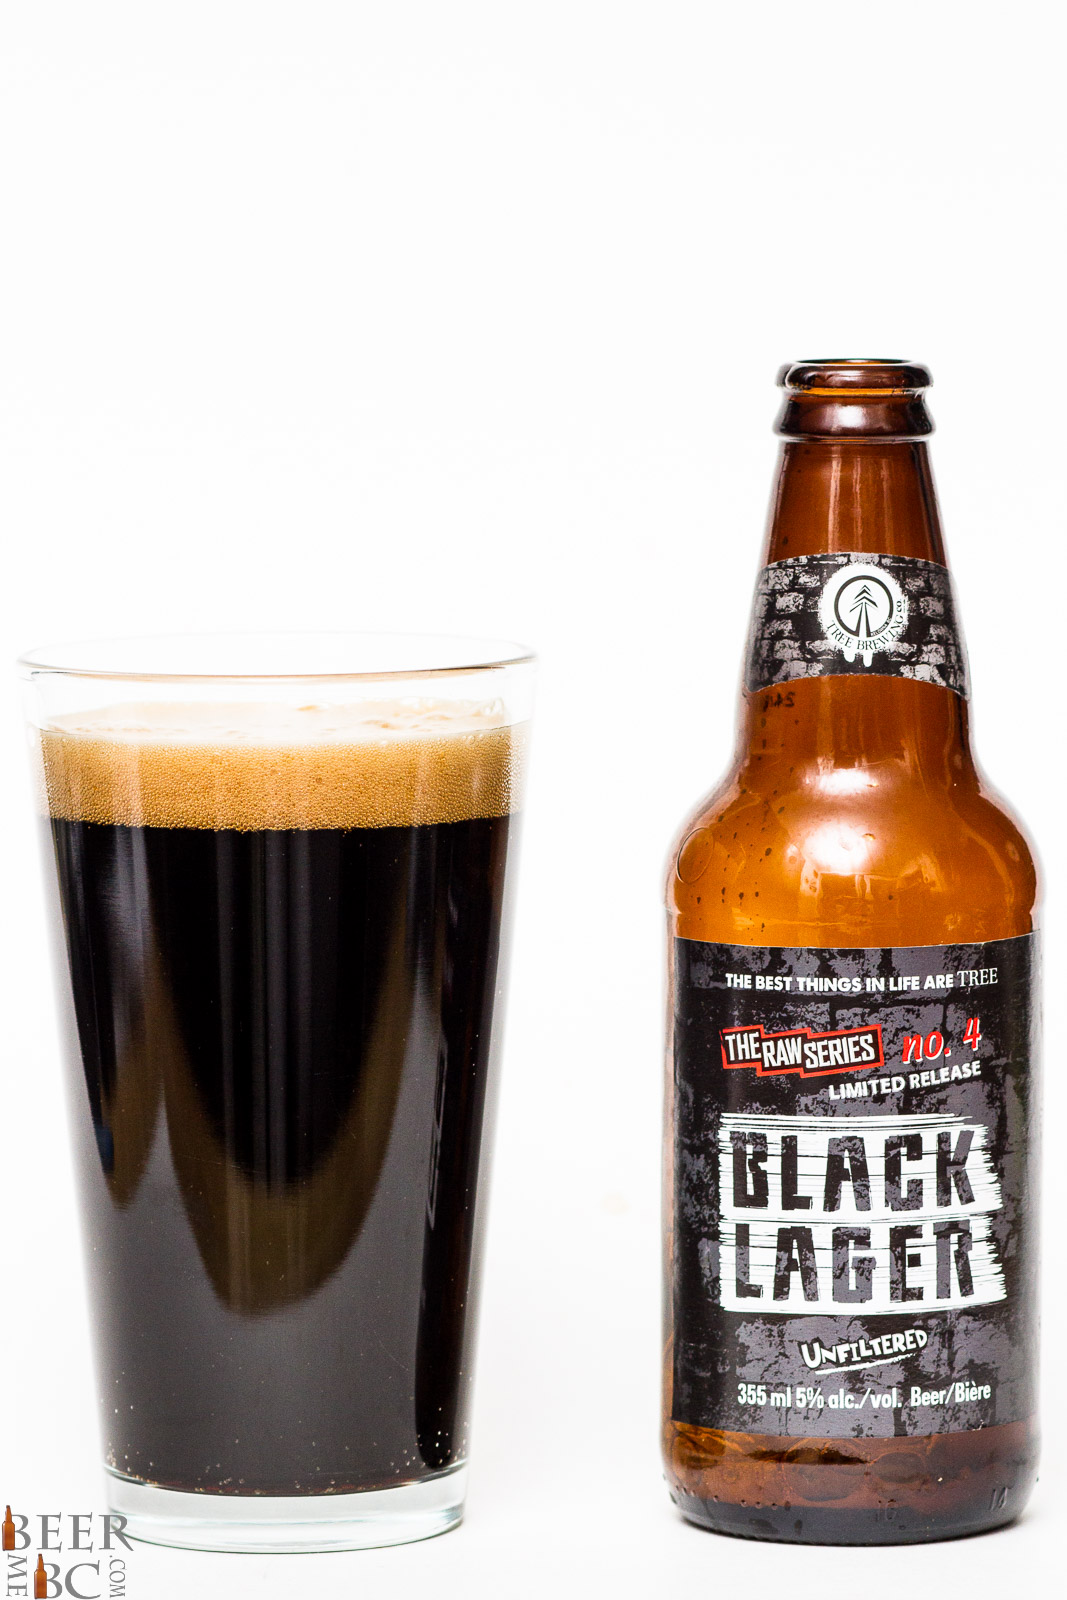 Black beer. Темный лагер. Пиво лагер. Пиво с черной этикеткой. Блэк бир.